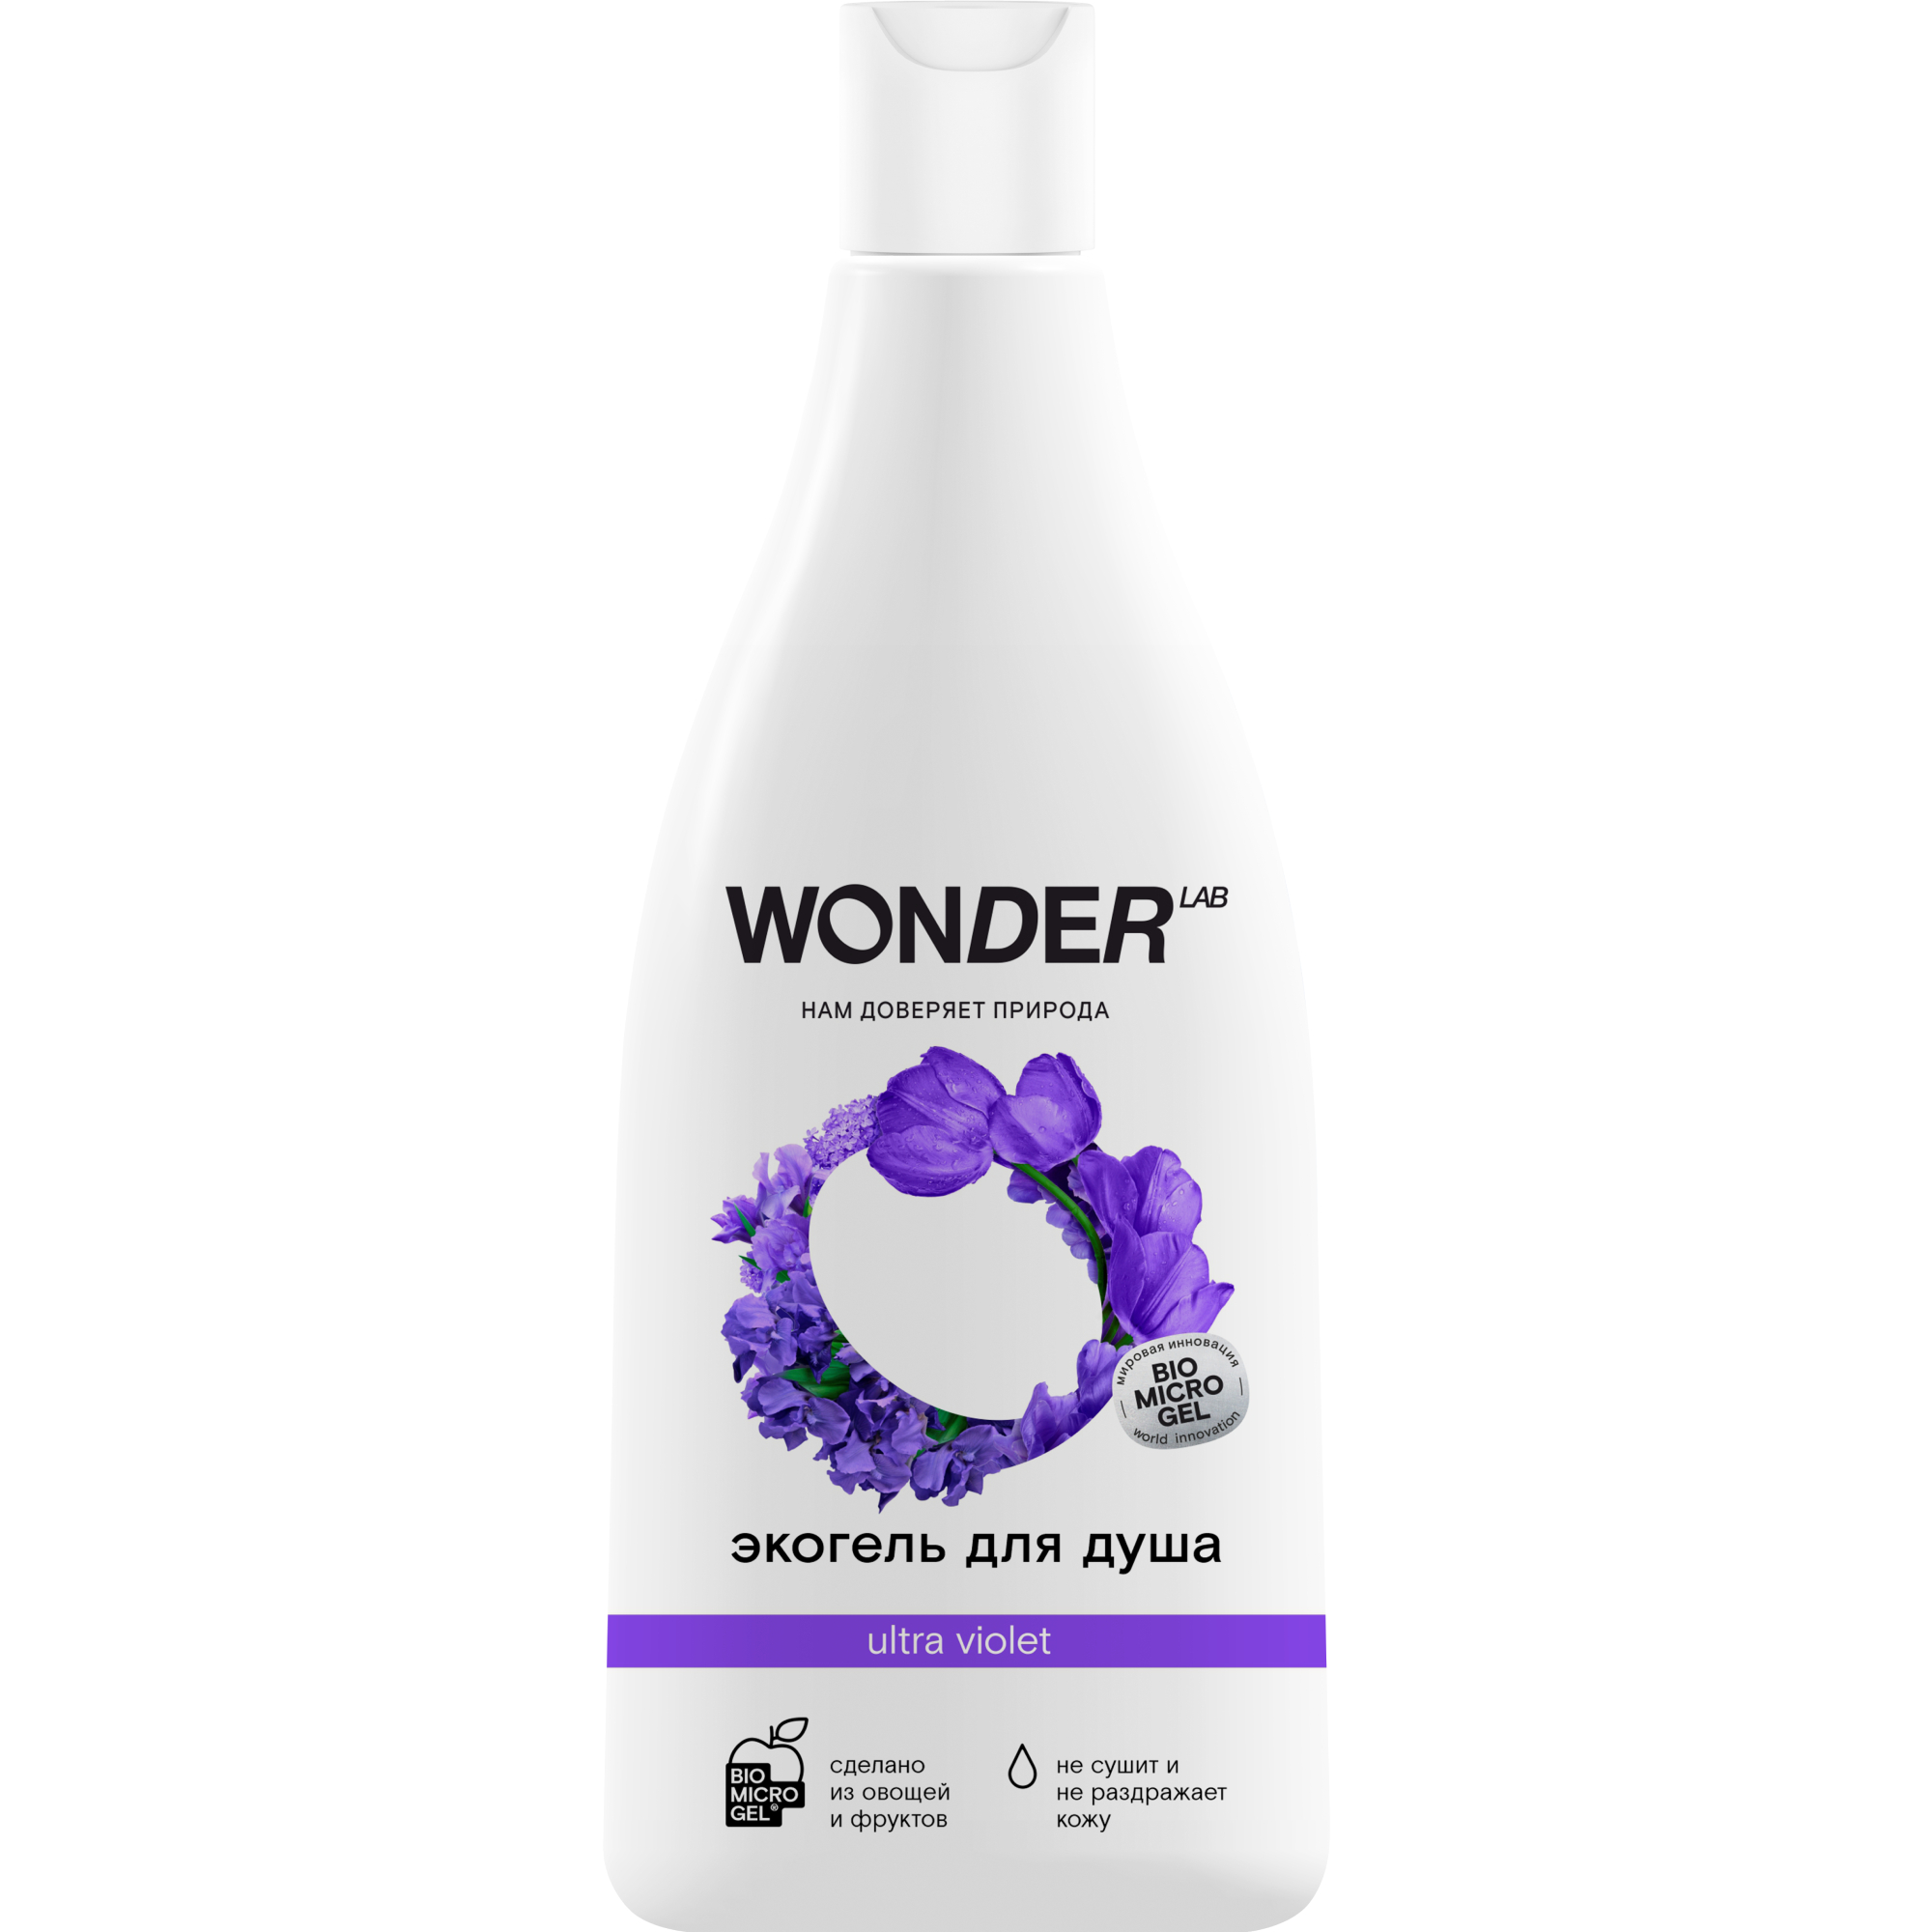 Гель для душа WONDER LAB ultra violet увлажняющий Полевые цветы 550 мл